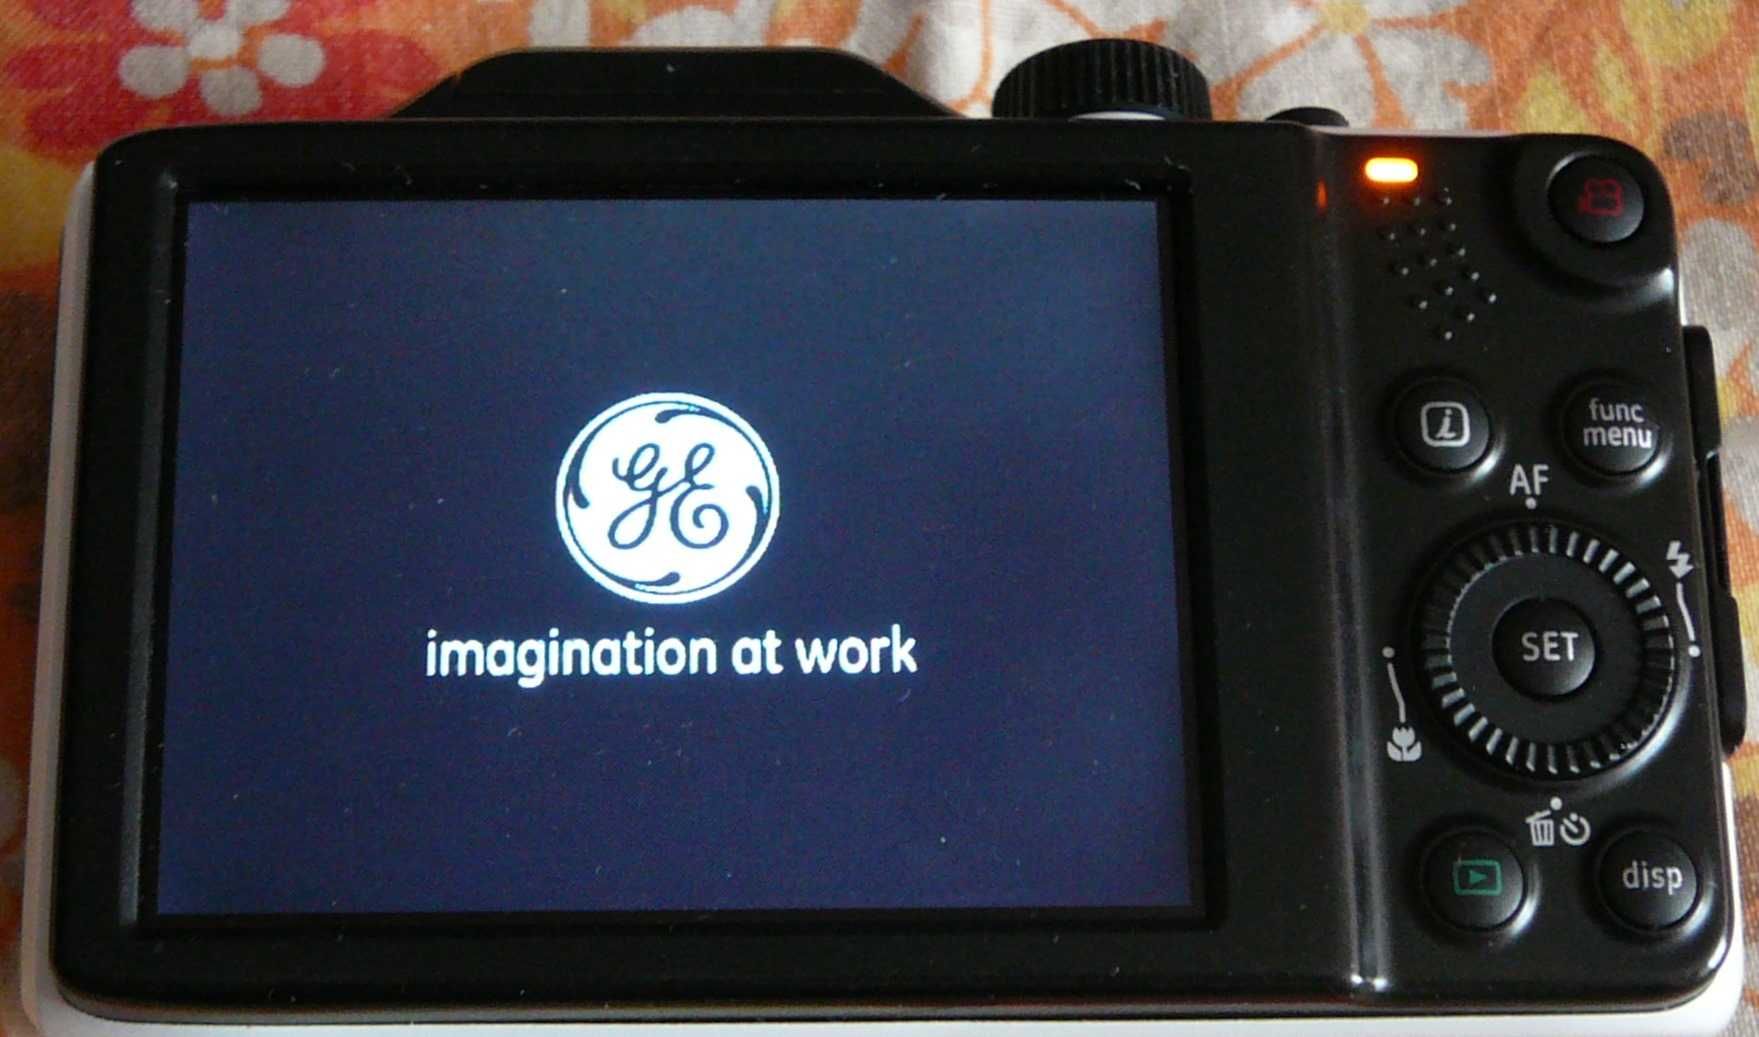 Цифрова фотокамера General Electric G100